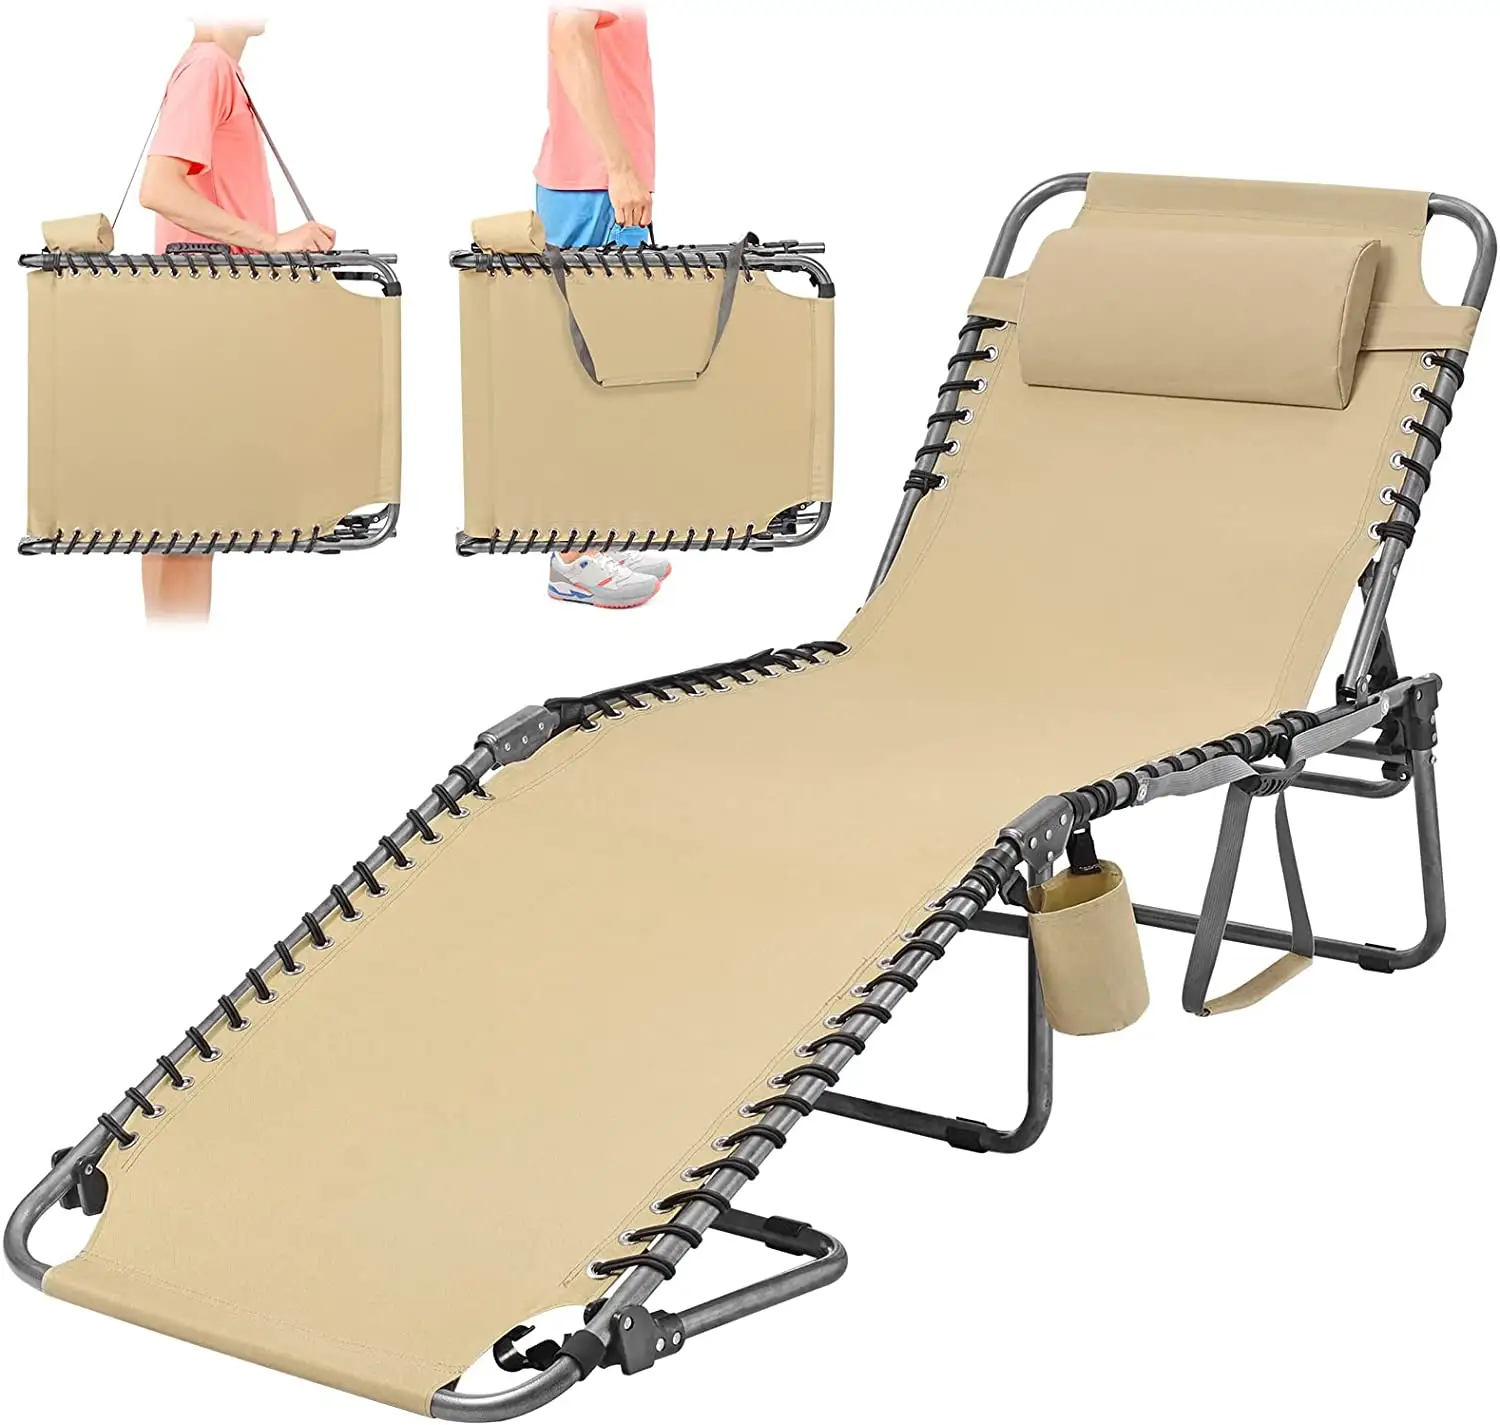 NPOTゼログラビティローンパティオ折りたたみ式リクライニングチェア調節可能な背もたれ付き長椅子